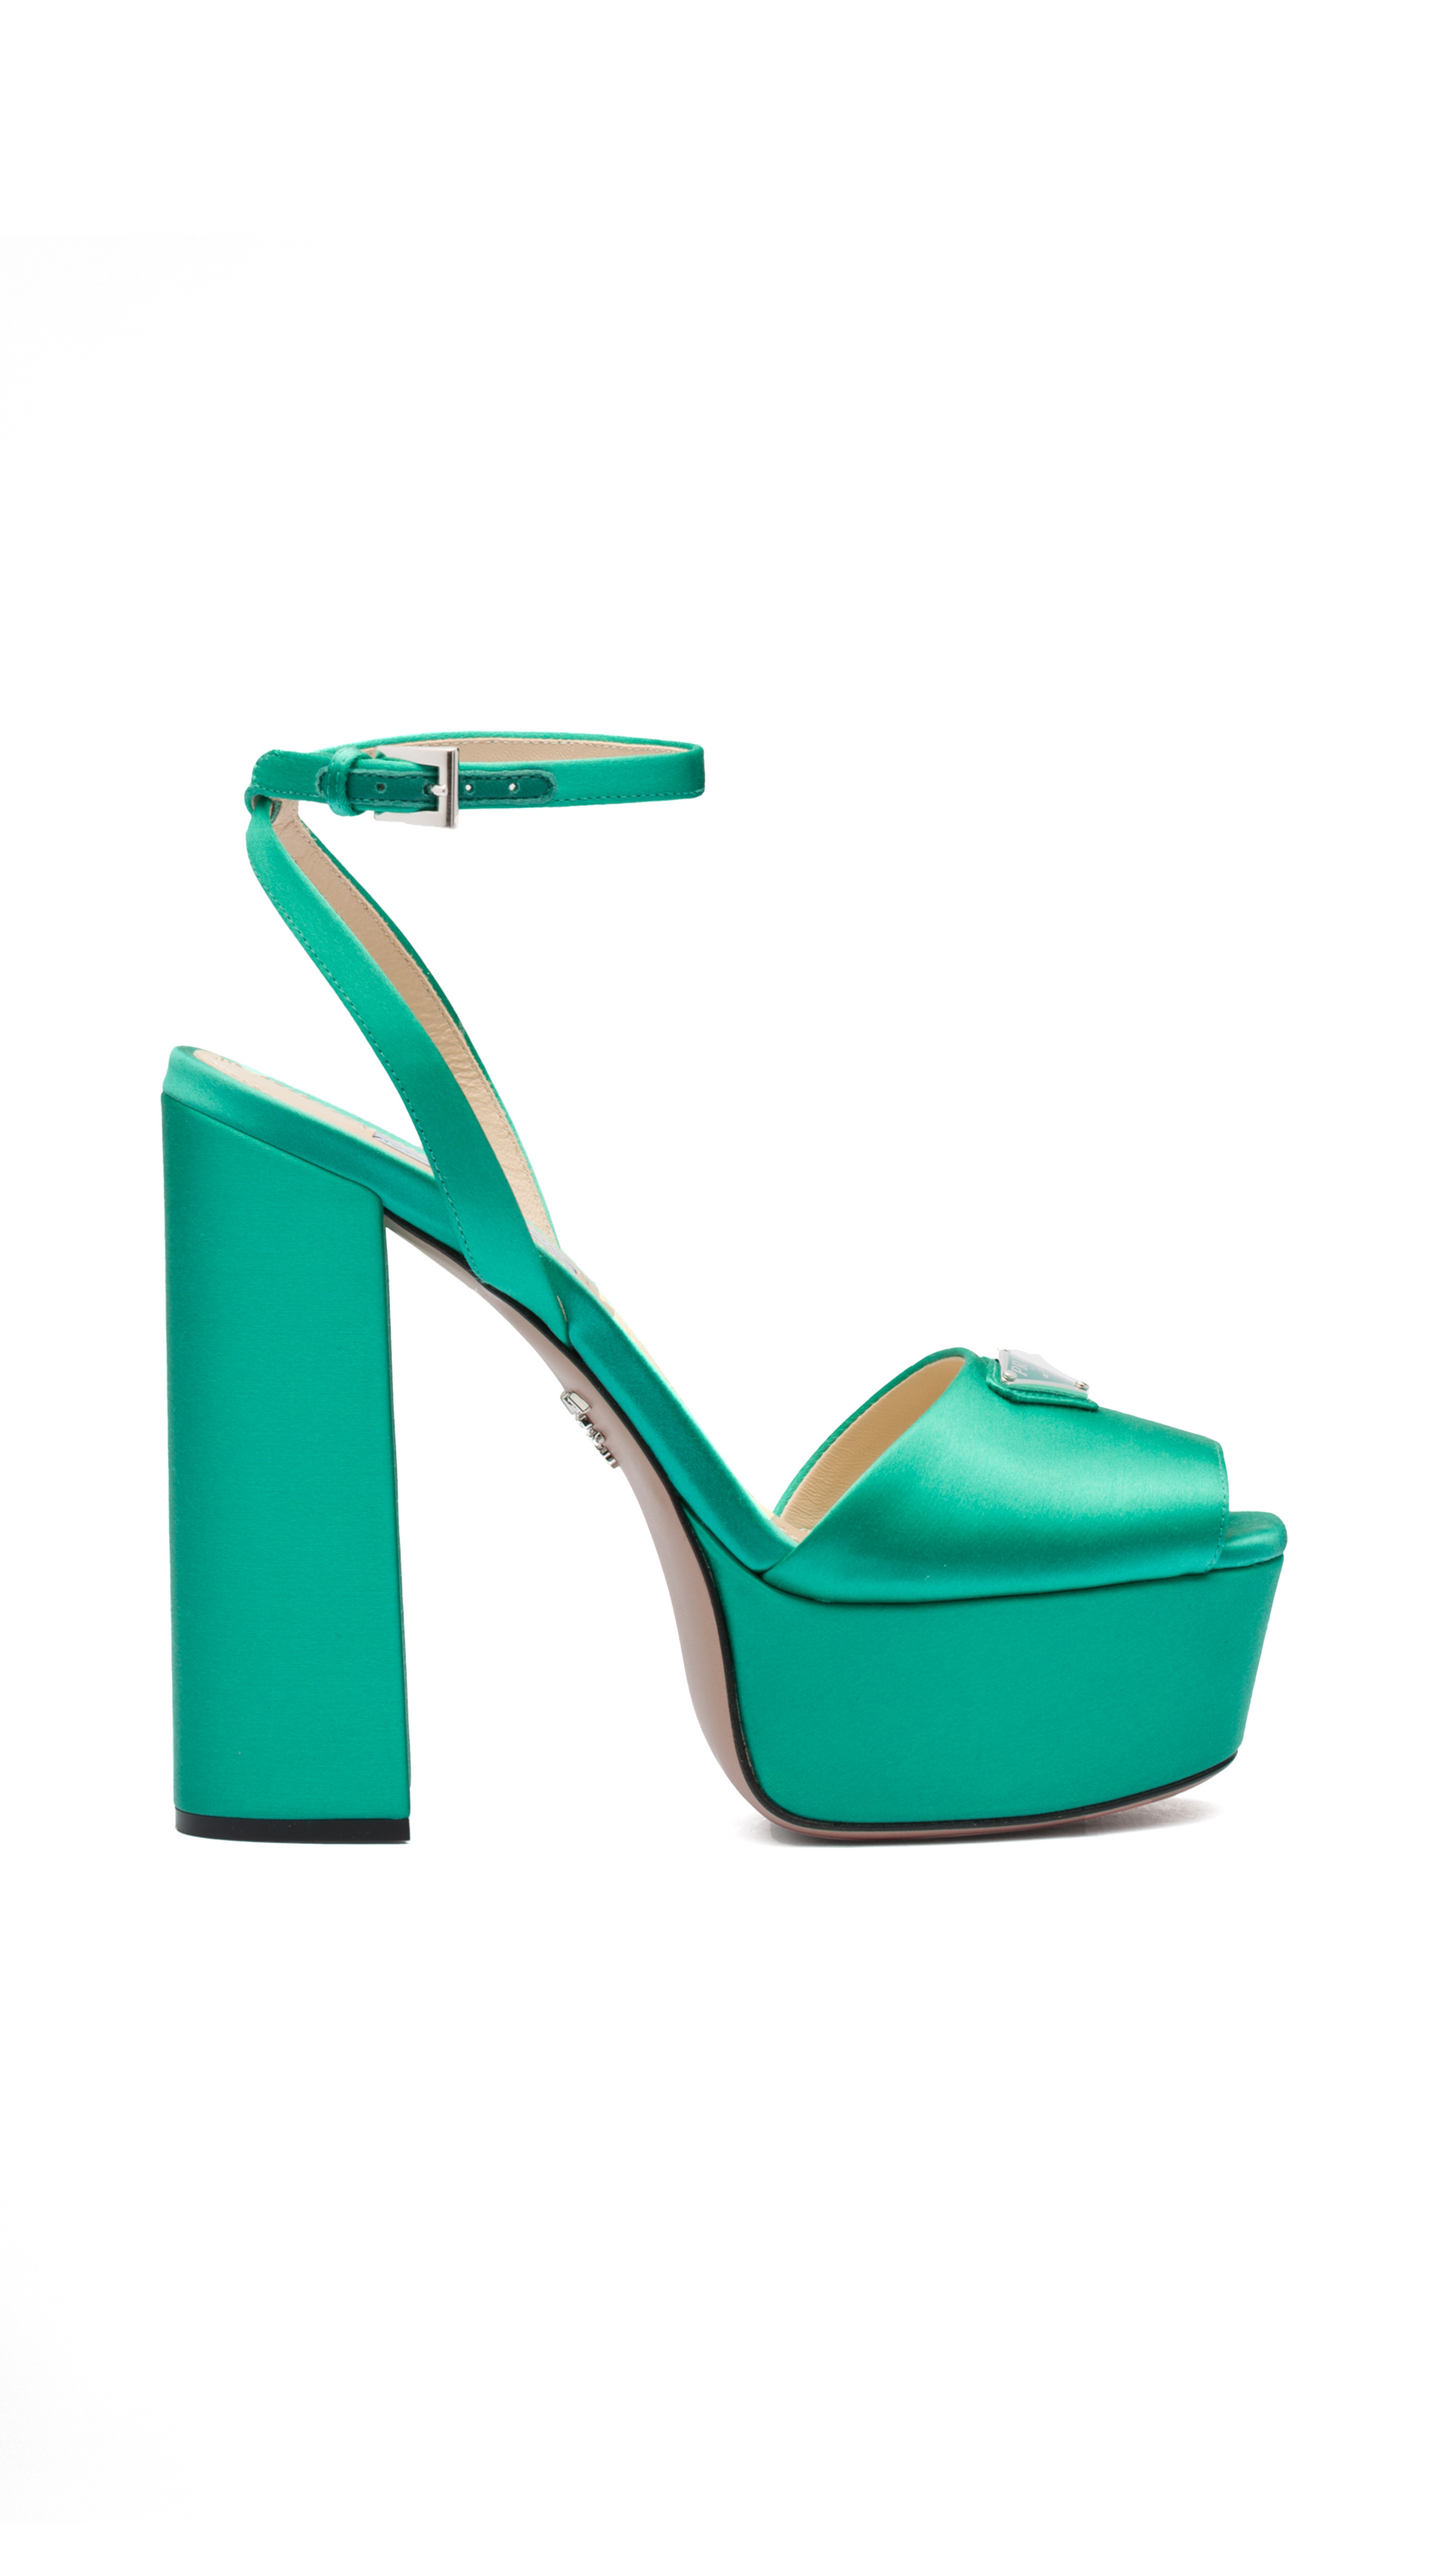 High-heeled satin sandals - Absinthe